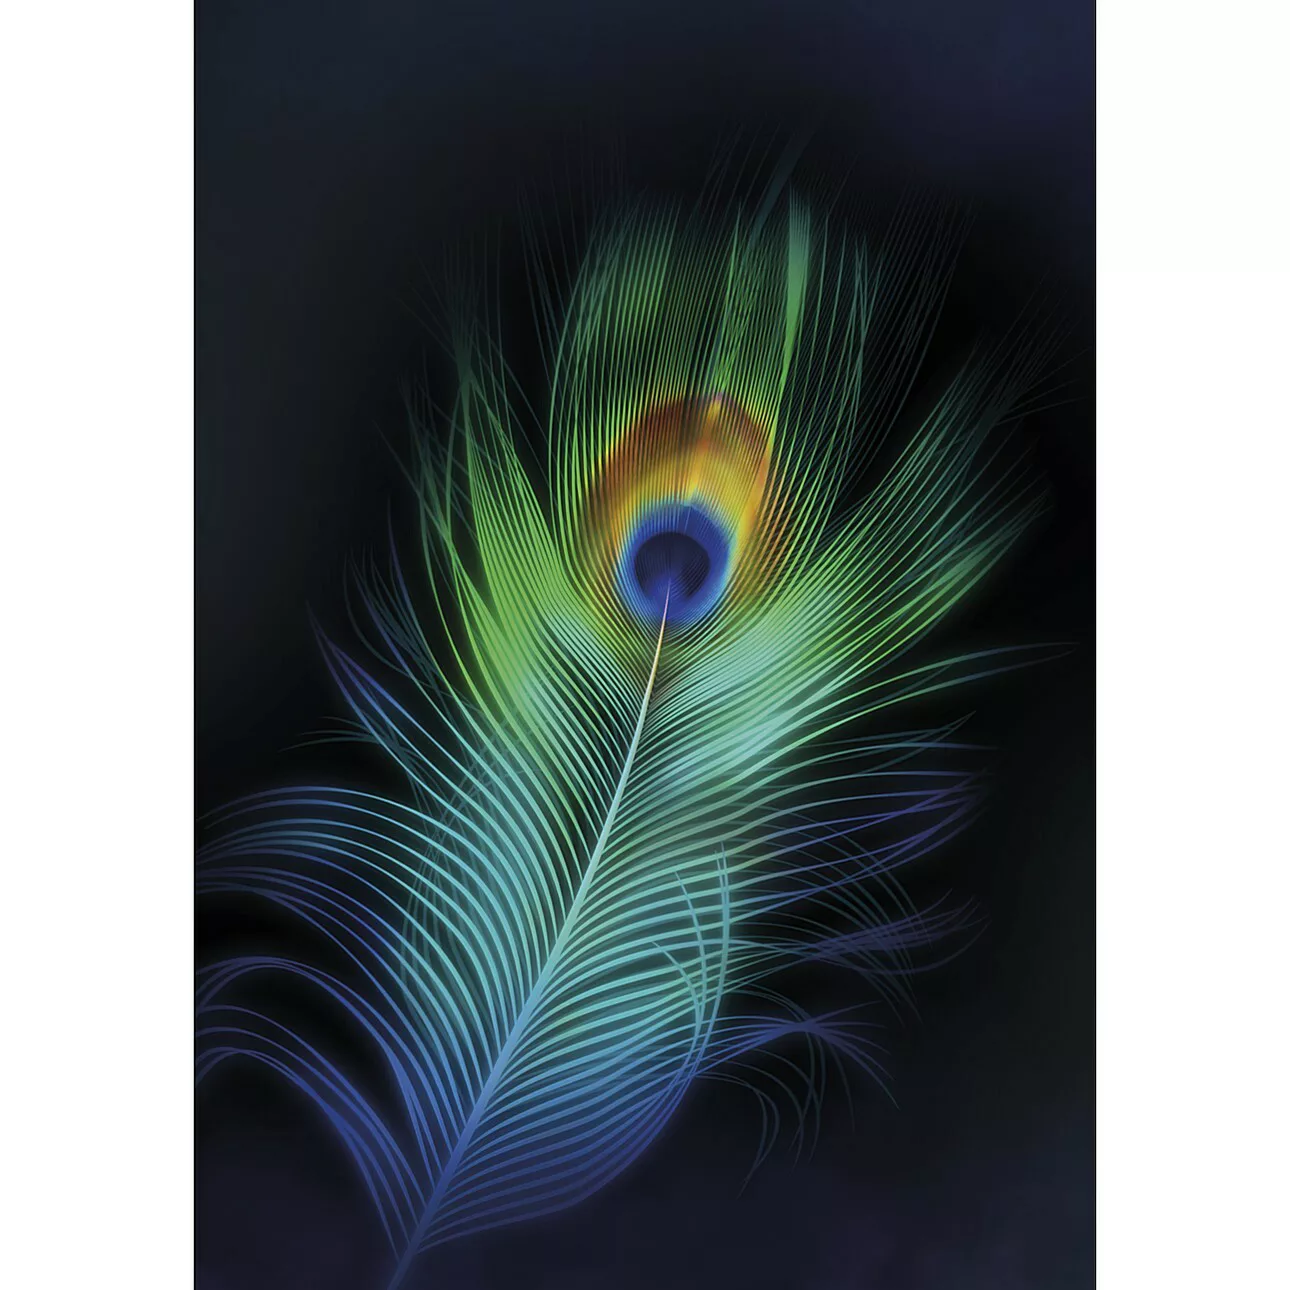 Leinwandbild Peacock Eye, 70 x 100 cm günstig online kaufen